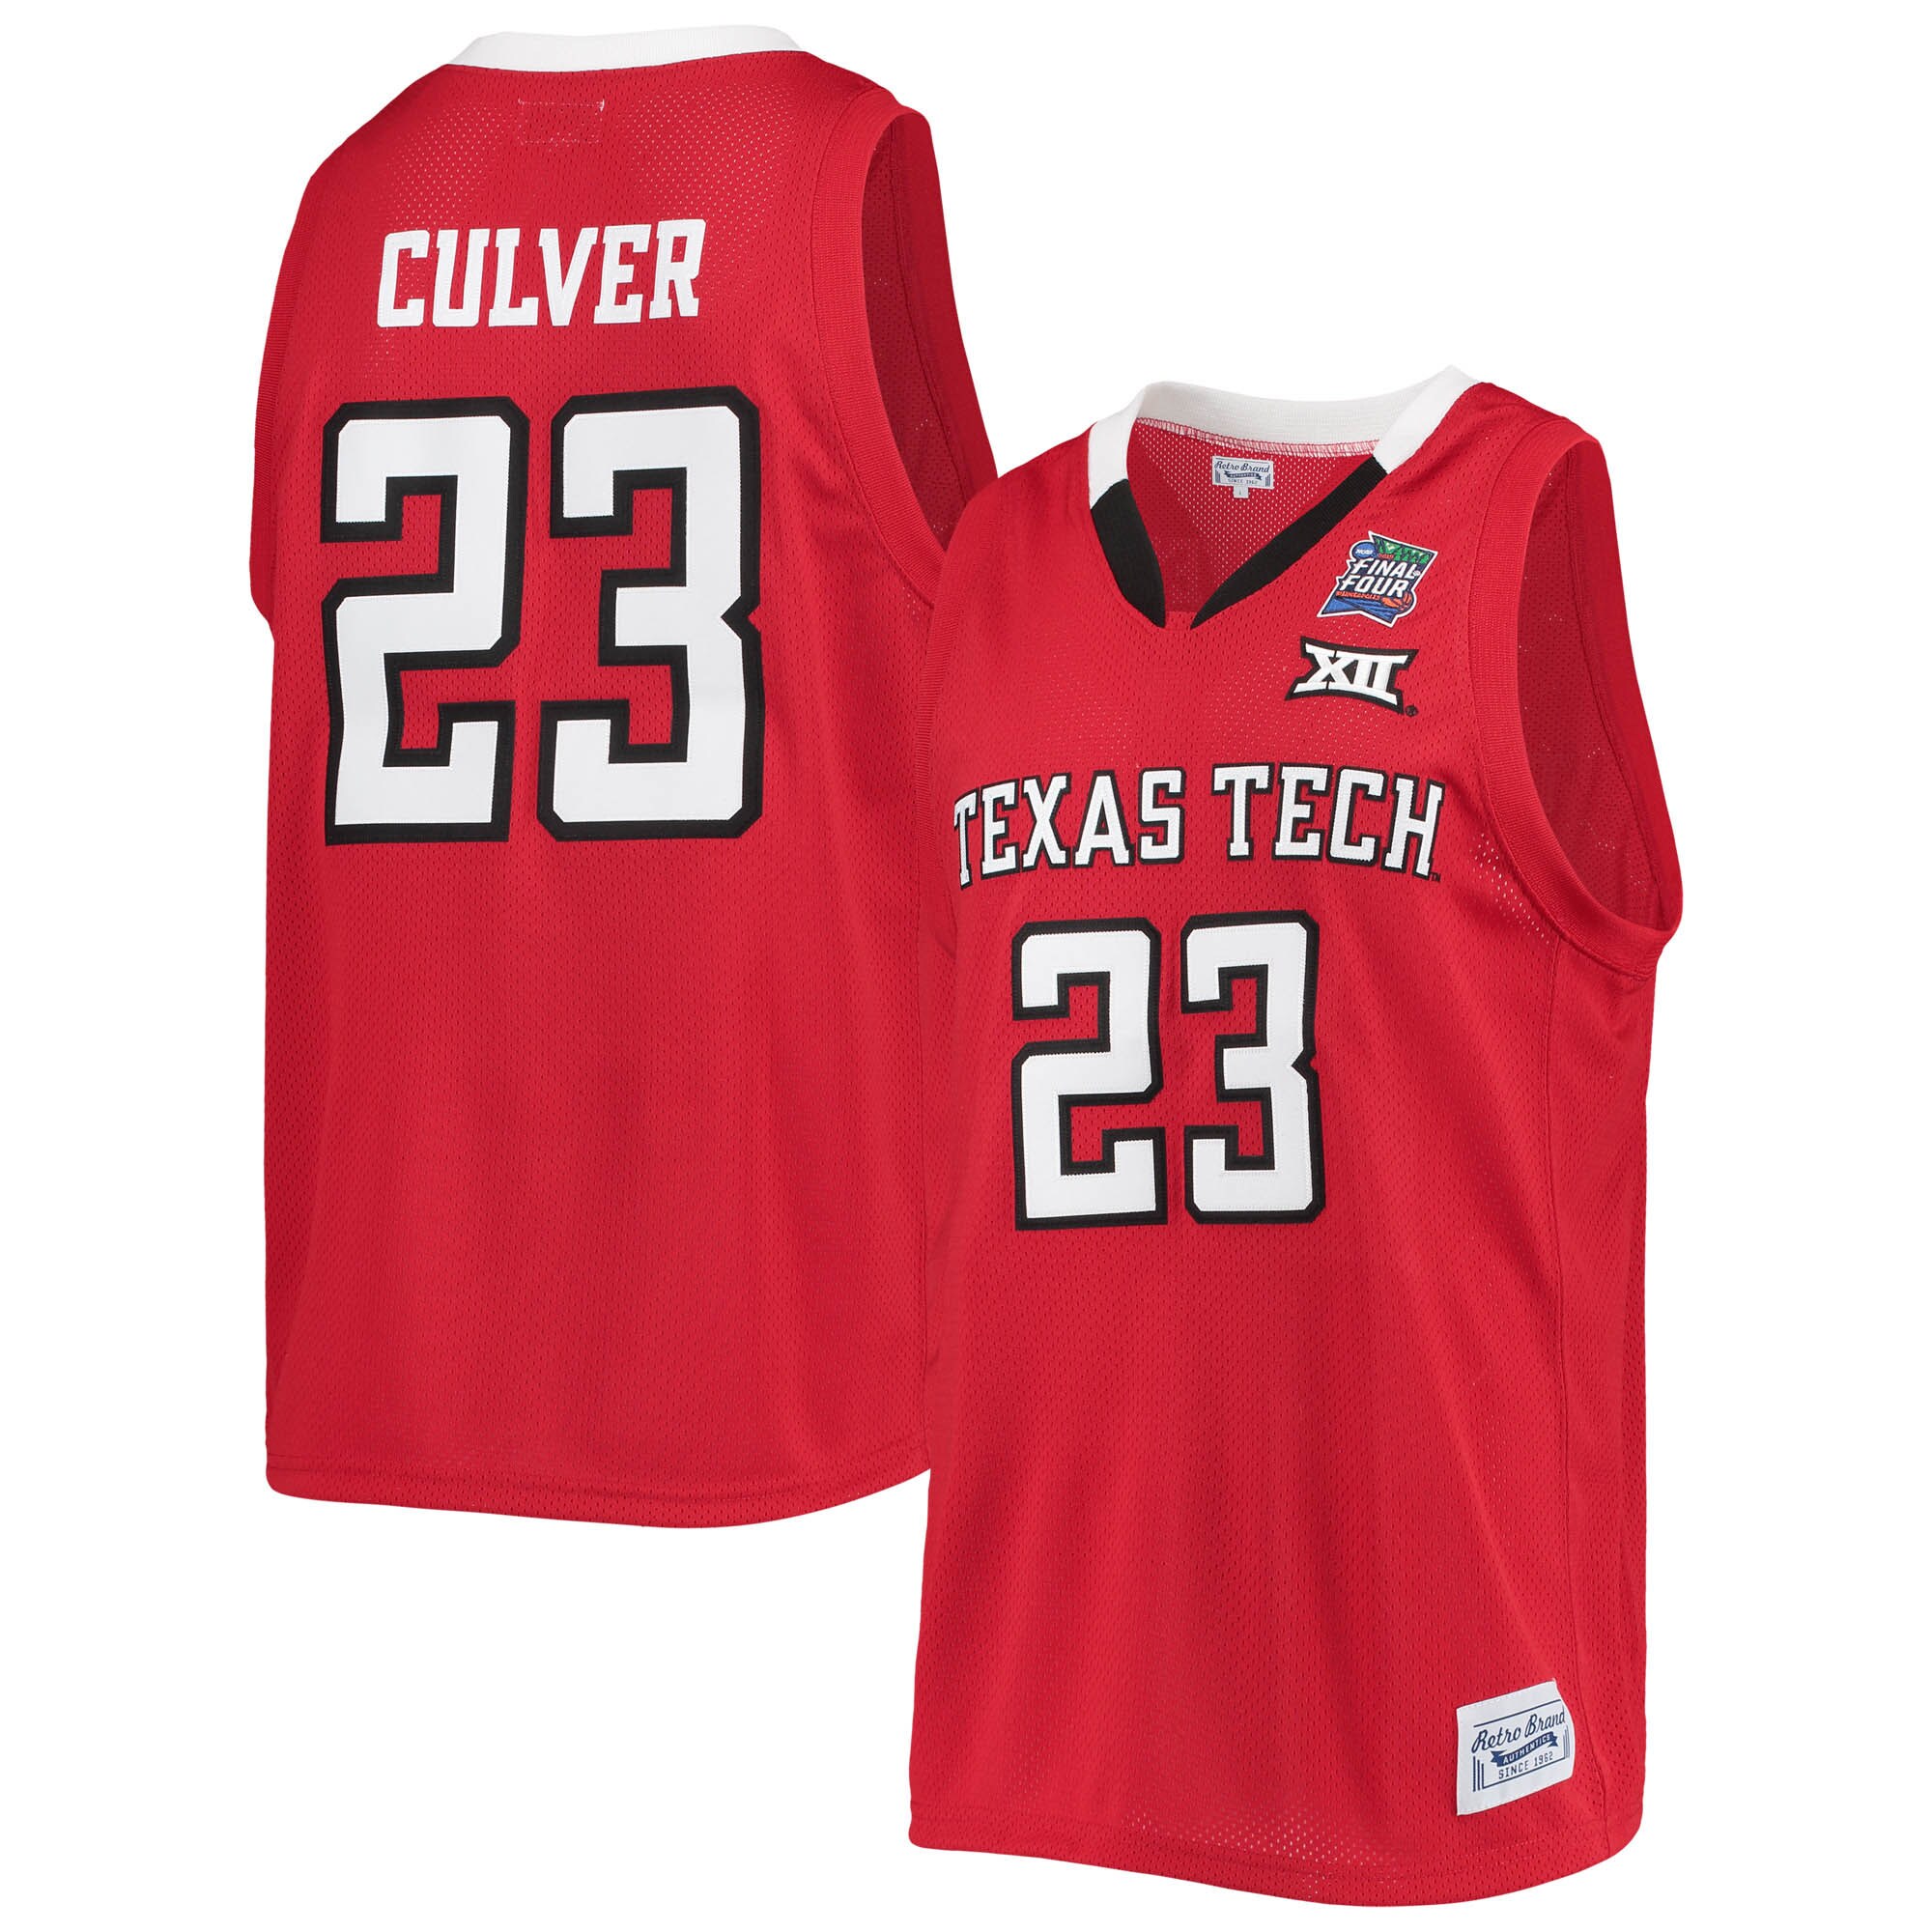 Jarrett Culver Texas Tech Red Raiders Original Retro Brand Alumni Commemorative Replica Basketball Jersey - Red For Youth Women Men